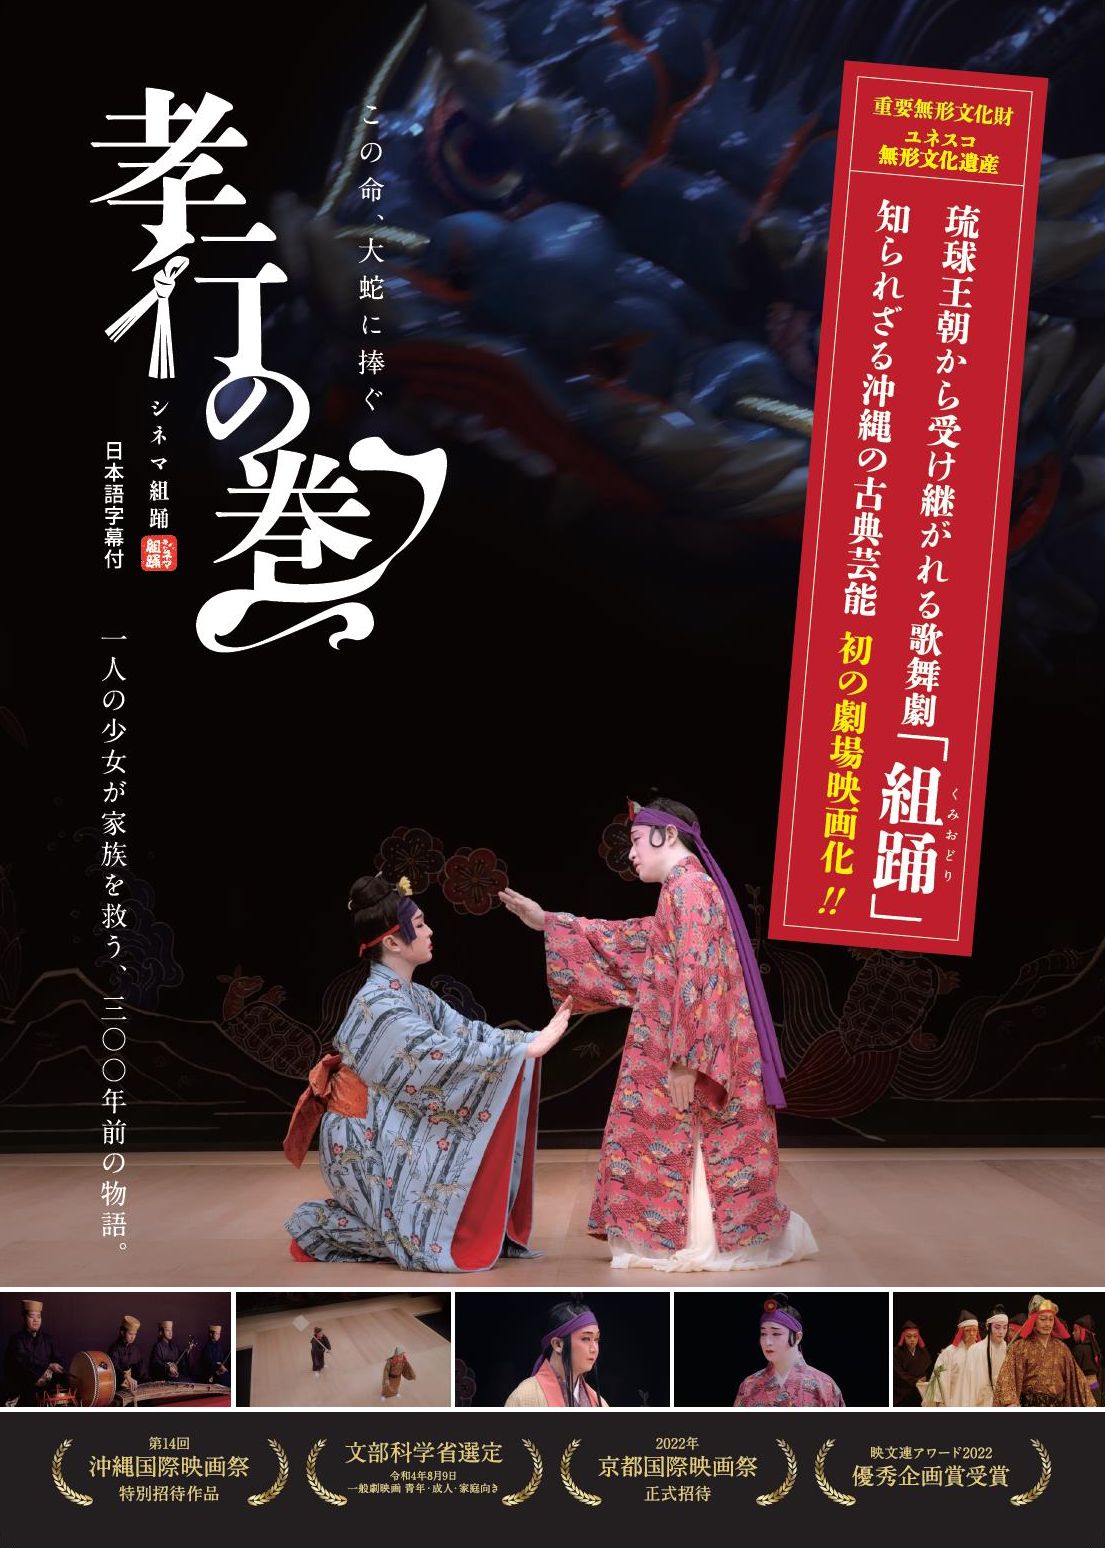 組踊の魅力を伝える映画が東京で上映『シネマ組踊 孝行の巻』